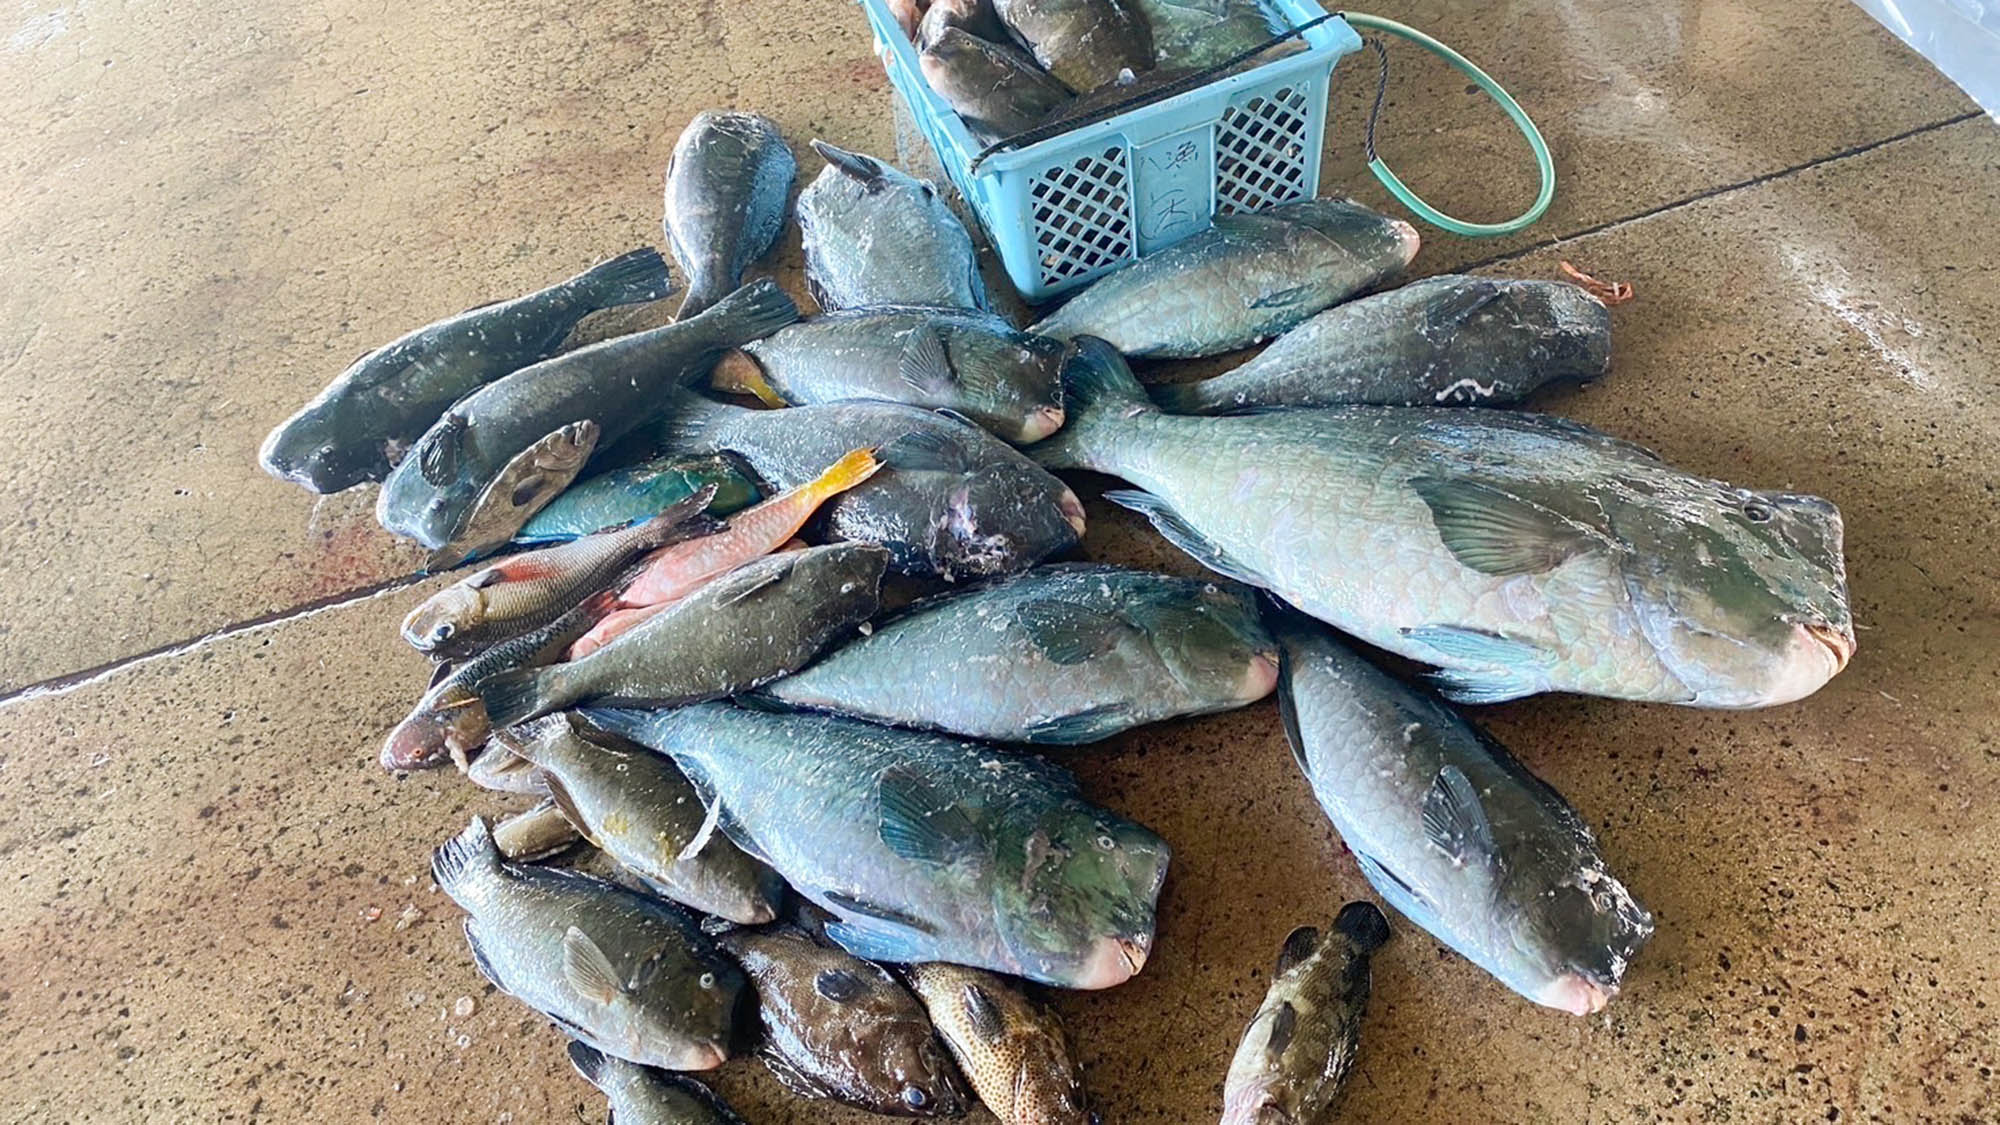 ・【八重山漁協】沖縄ならではのカラフルなお魚たちが見れるかもしれませんよ